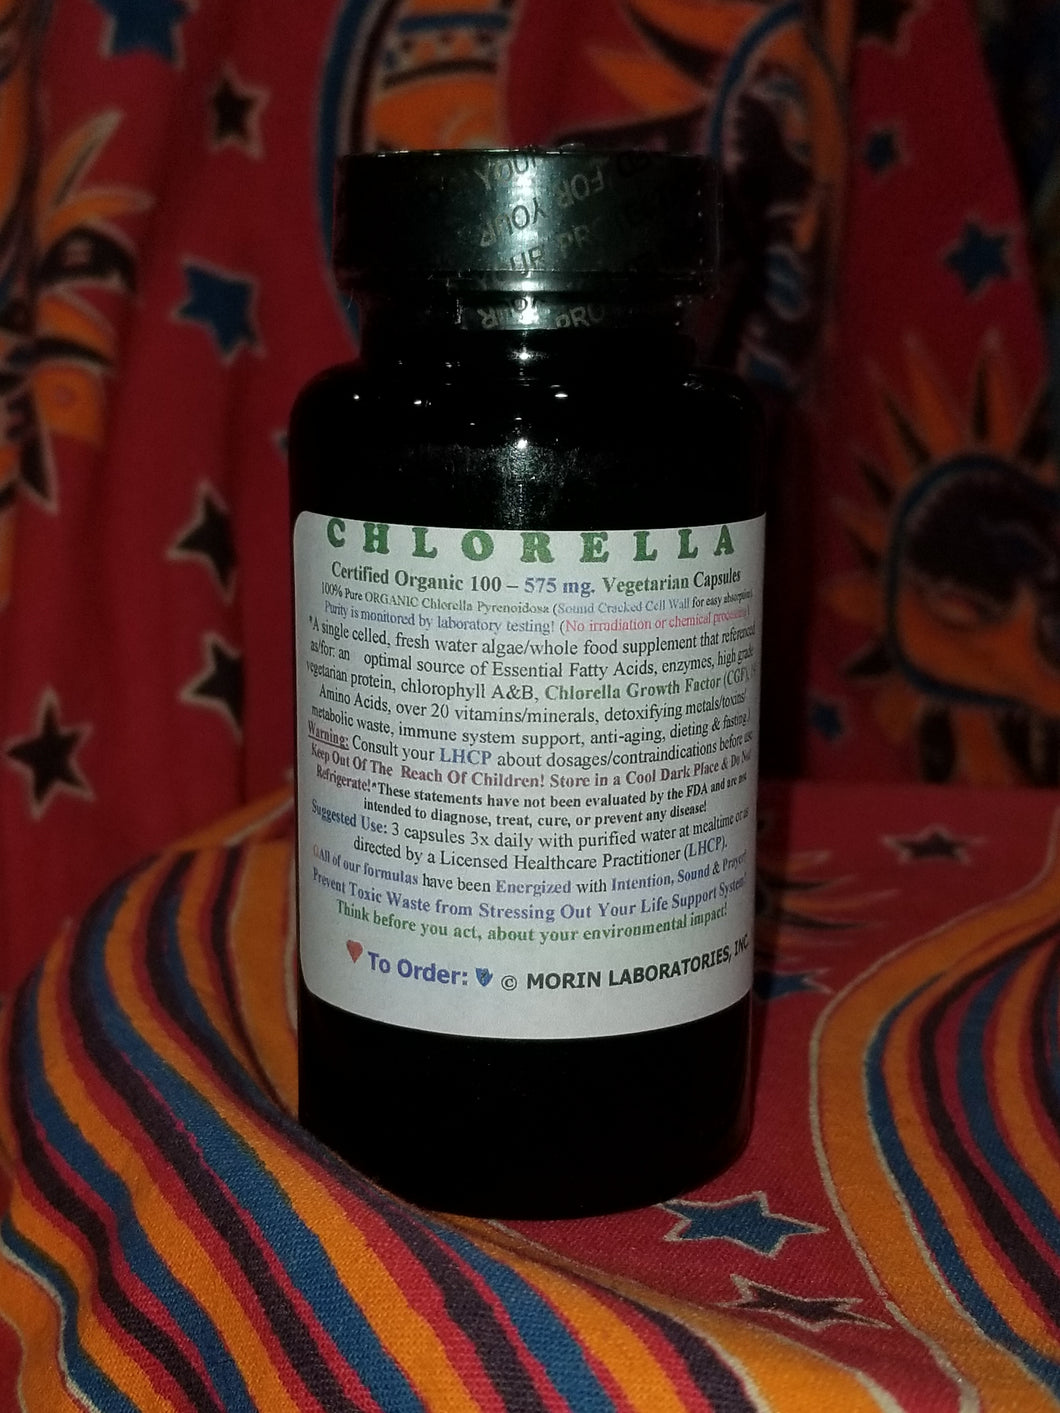 Chlorella Capsules (100 575 mg capsules)